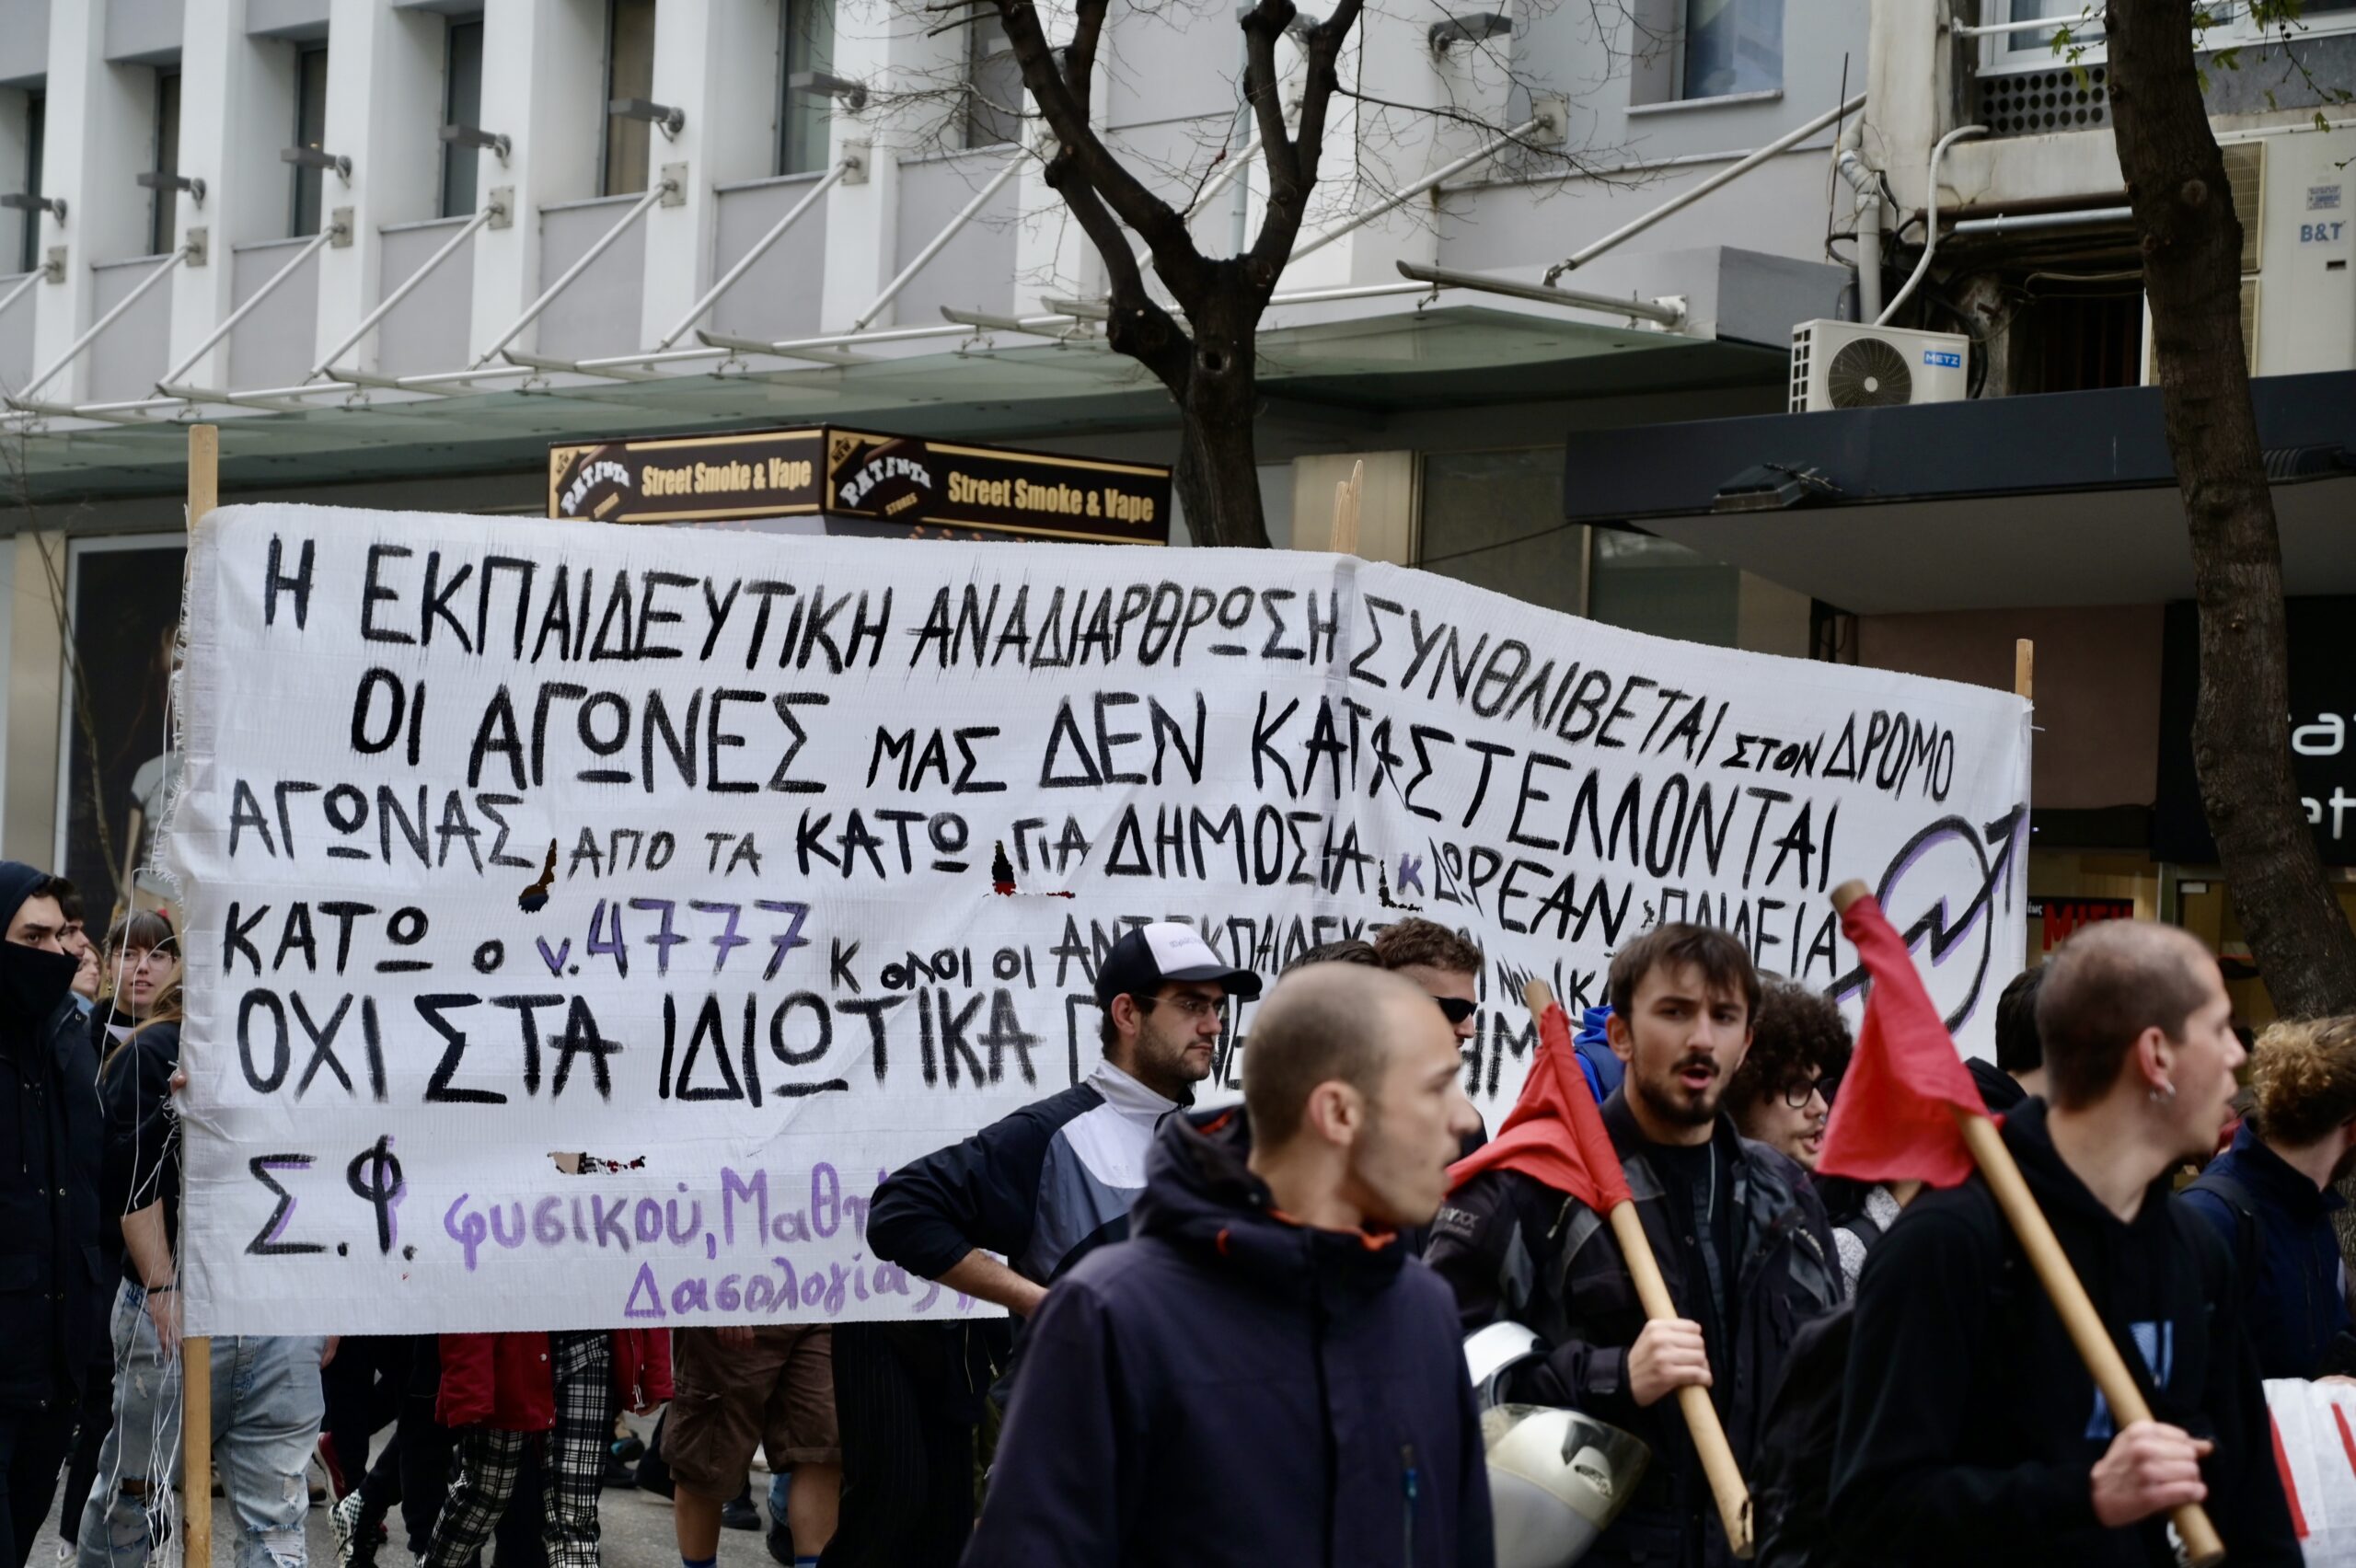 Φοιτητικό συλλαλητήριο σε εξέλιξη – Ρυθμίσεις στην κυκλοφορία στο κέντρο της Αθήνας